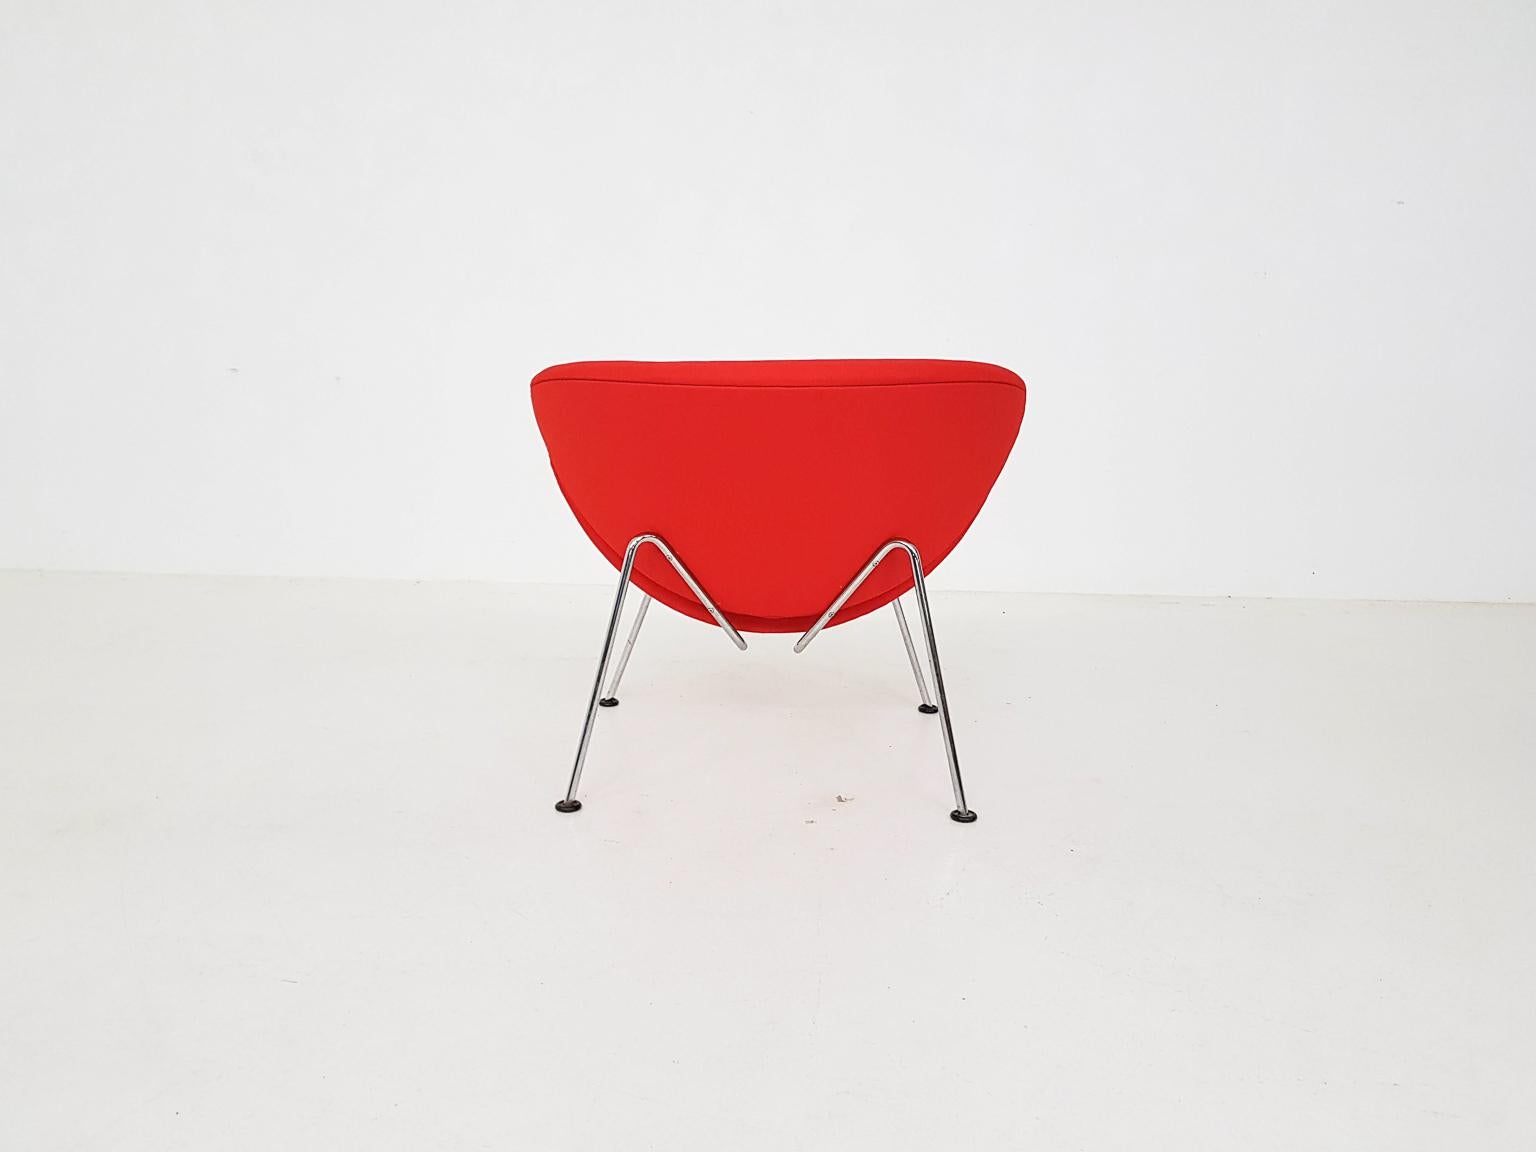 Mid-Century Modern Orange Slice Lounge Chair by Pierre Paulin for Artifort Dutch Modern Design 1961